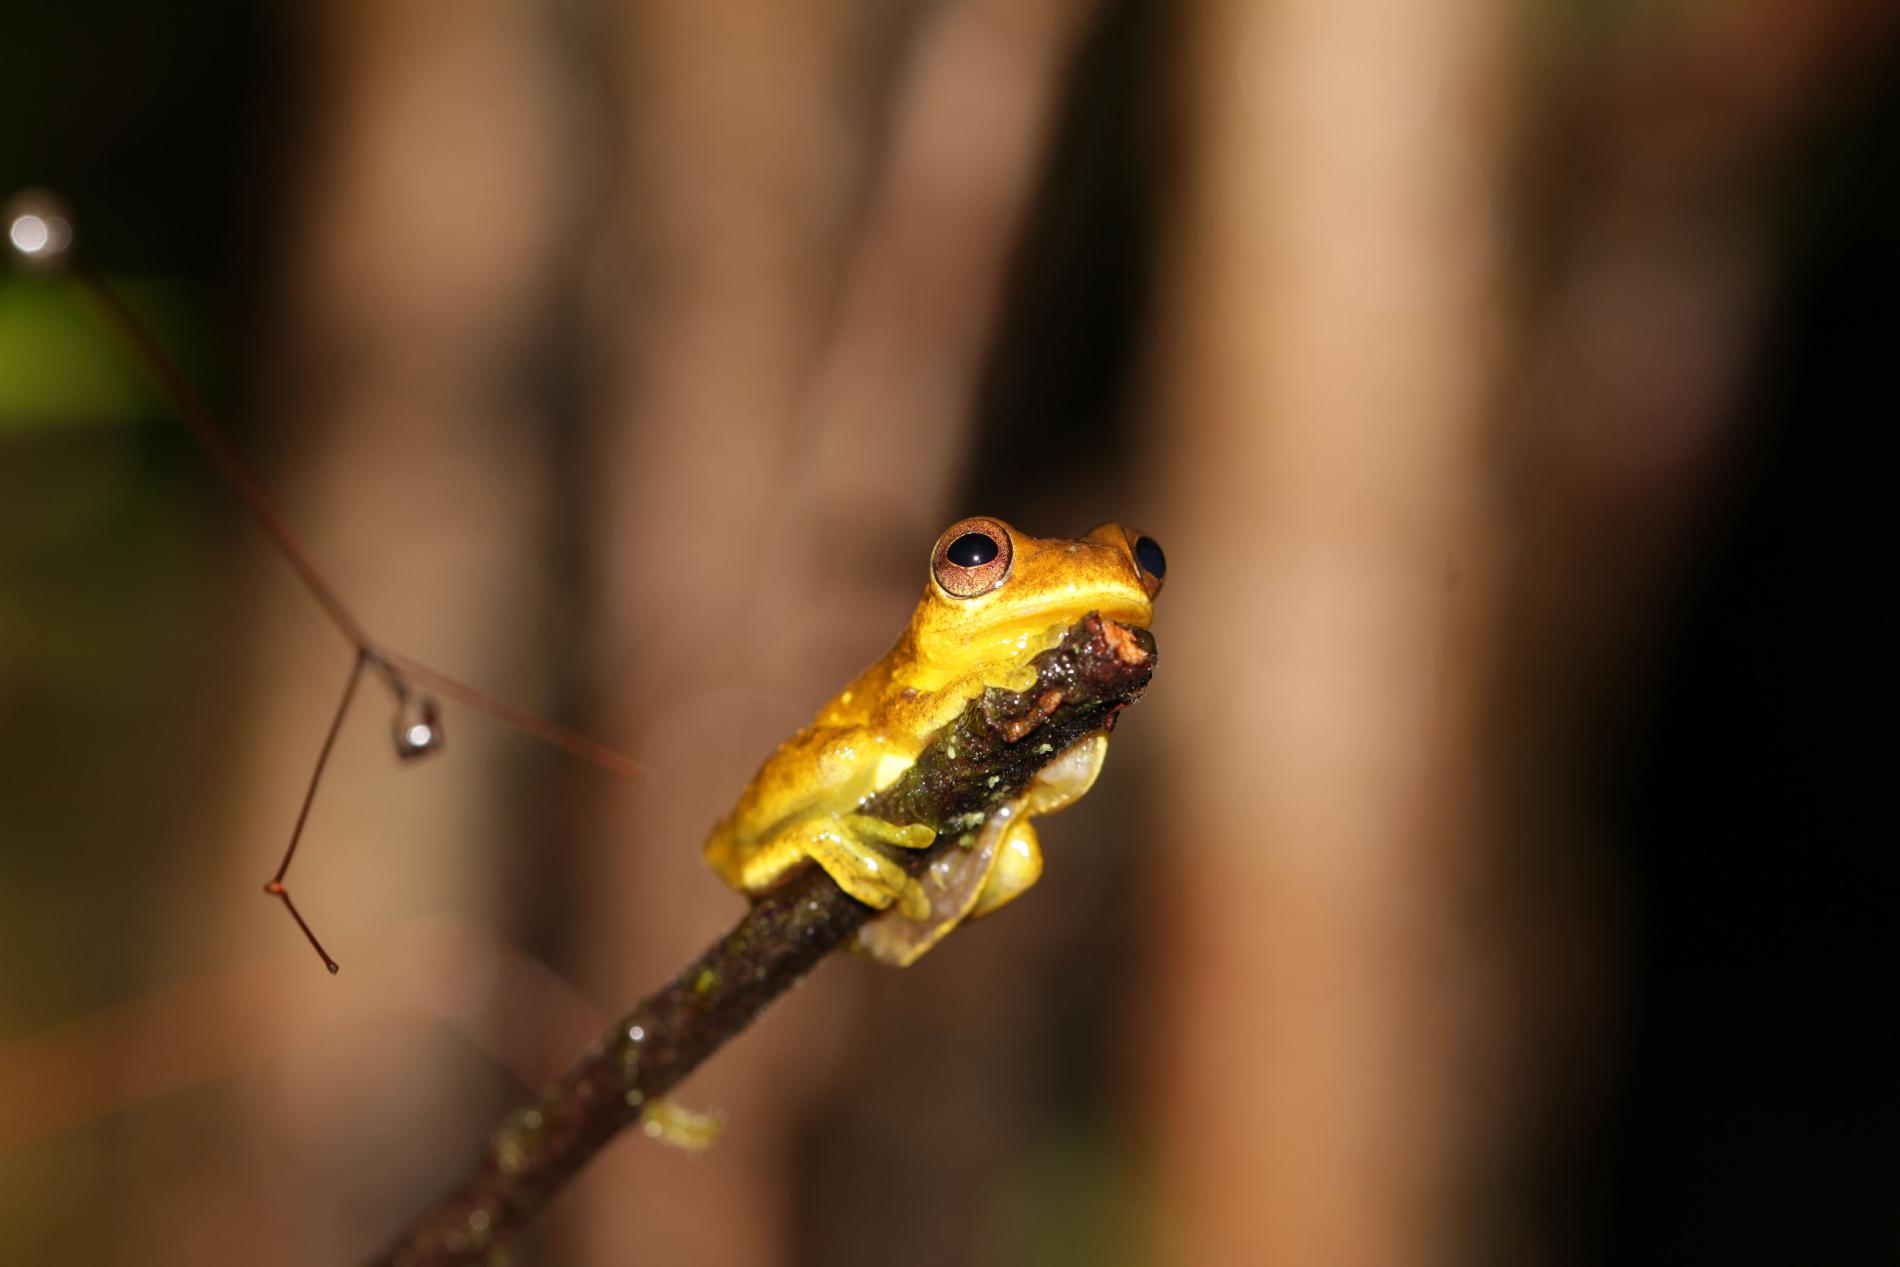  Rainette de Gaucher (*Dendropsophus gaucheri*), Guyane © Raphael Gailhac - Office français de la biodiversité